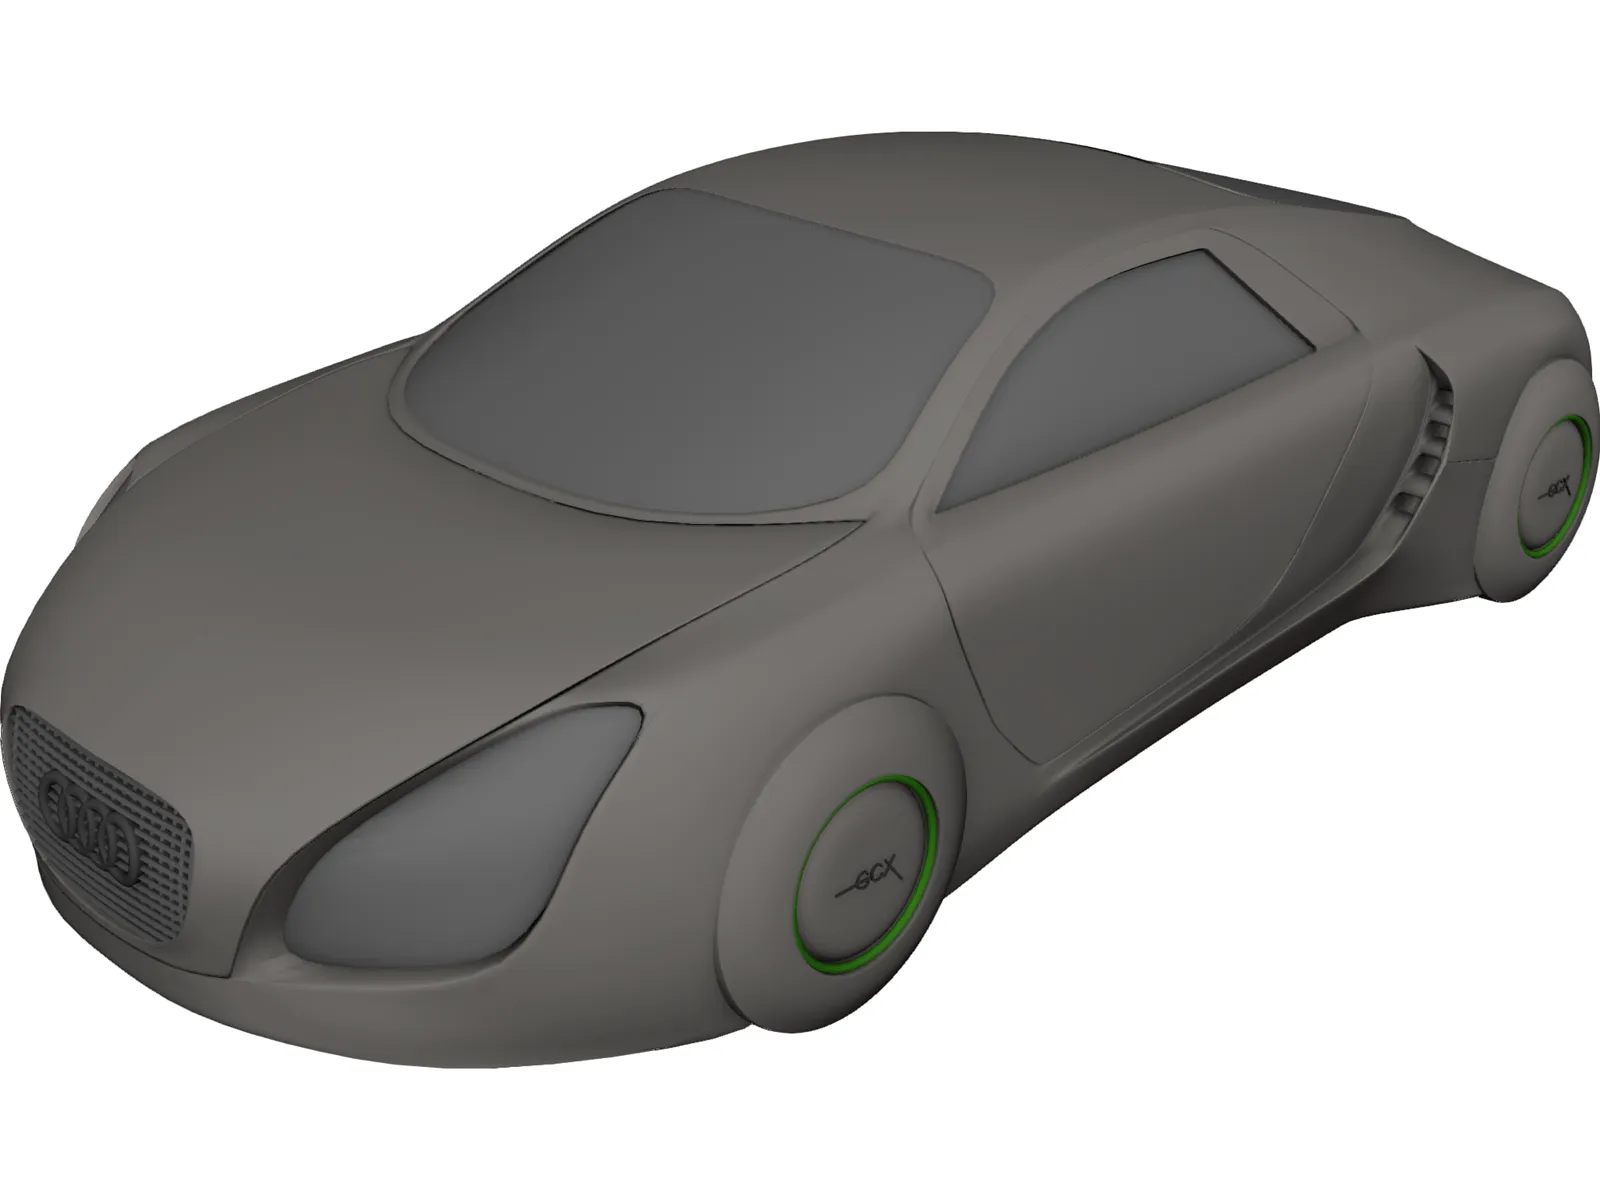 Audi RSQ 10 Concept 3D Model